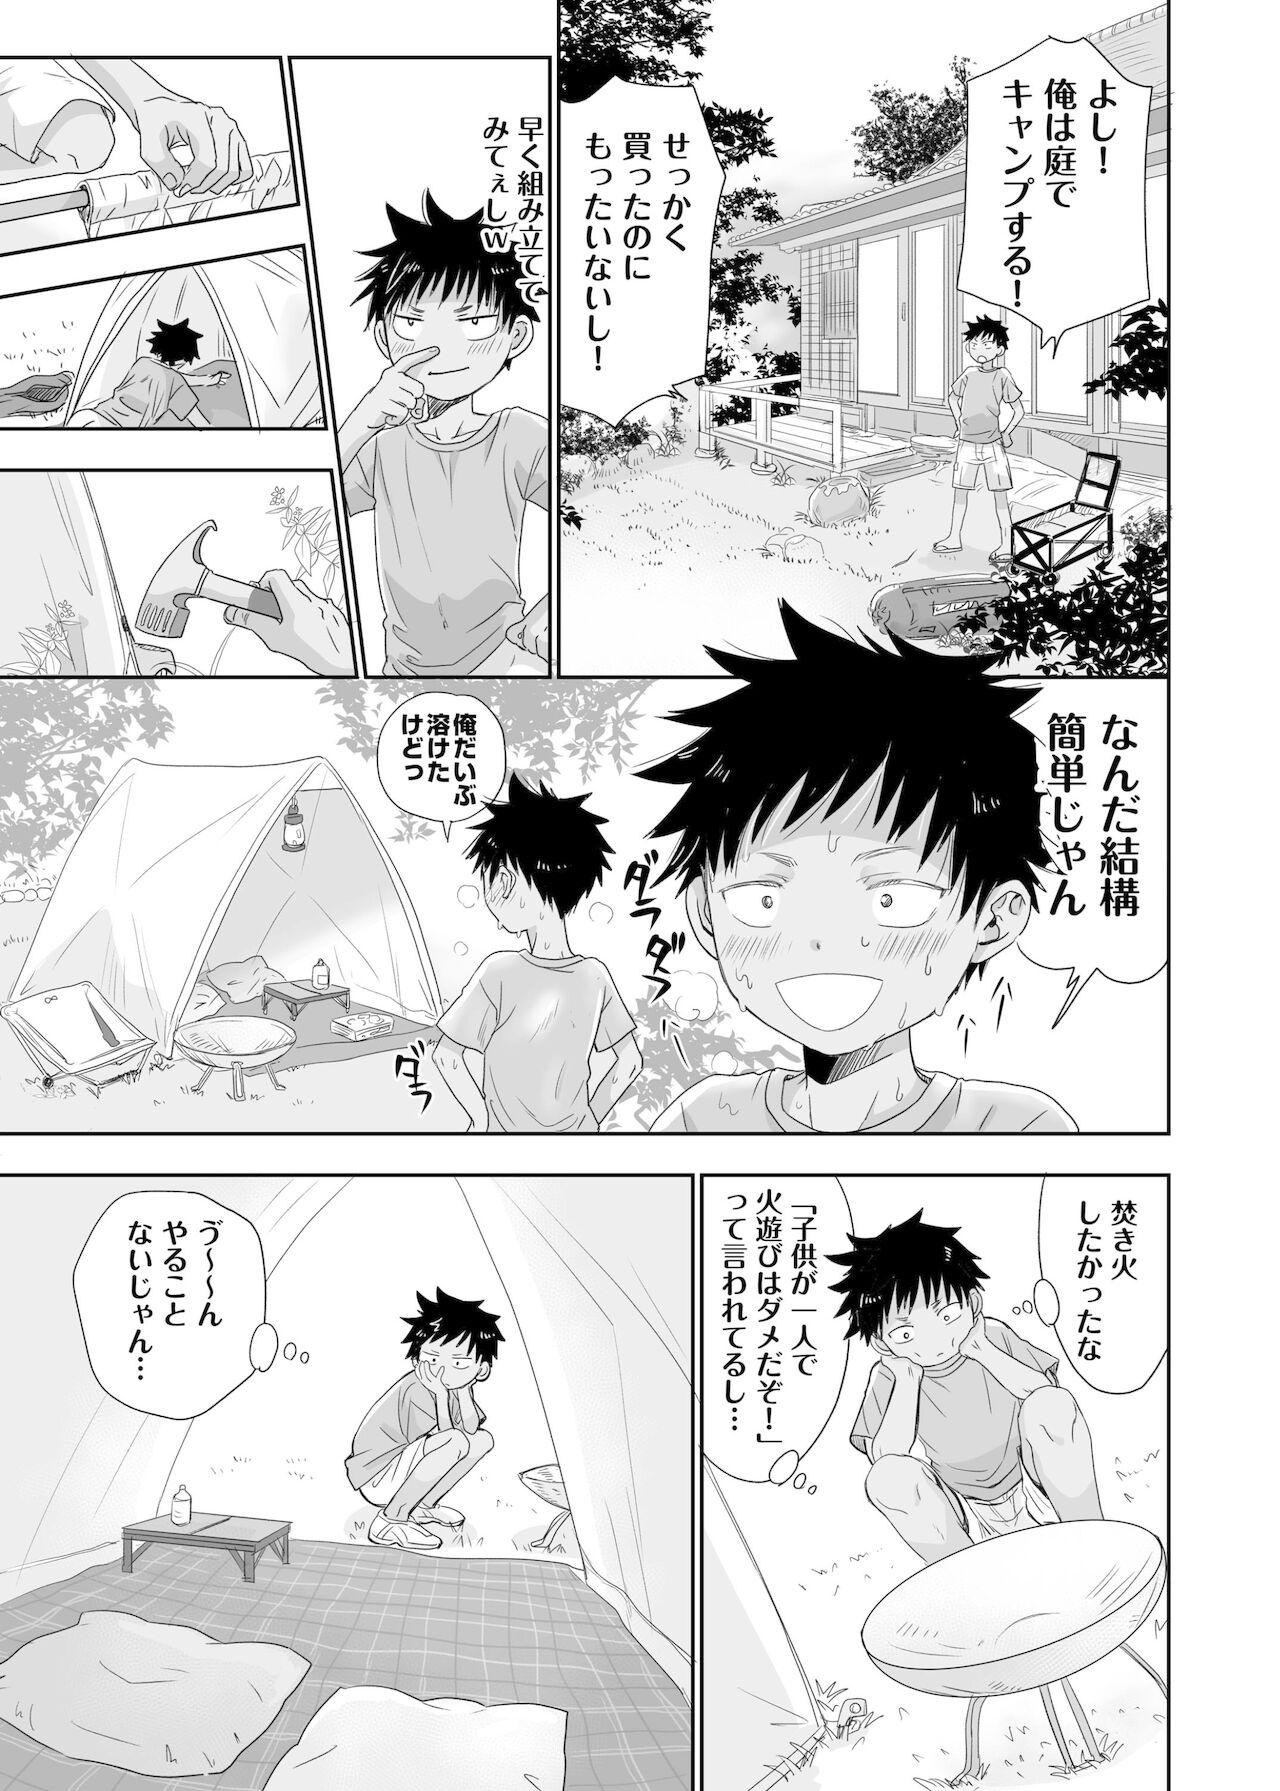 4some Tonari no oniisan no Karada ga sugokute ki ni naru. Girl - Page 7